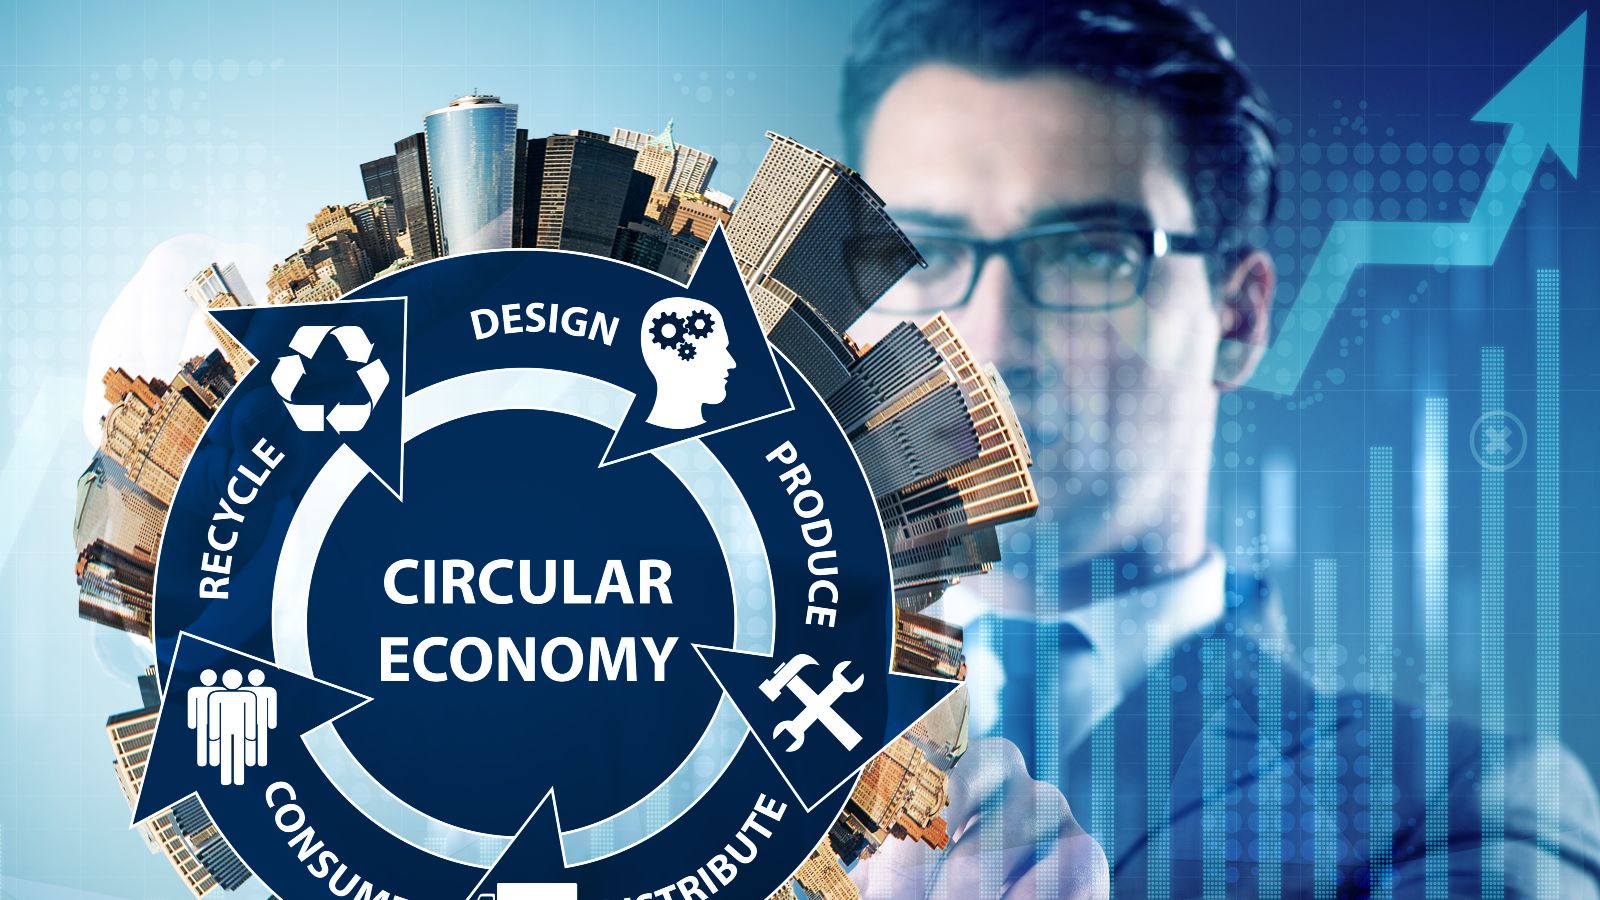 Das Bild zeigt einen Mann, der mit seiner Hand auf eine Zeichnung zeigt. Davor befindet sich ein blauer Kreislauf mit dem Wort Circular Economy im Zentrum und verschiedenen Begriffen die damit im Zusammenhang stehen.